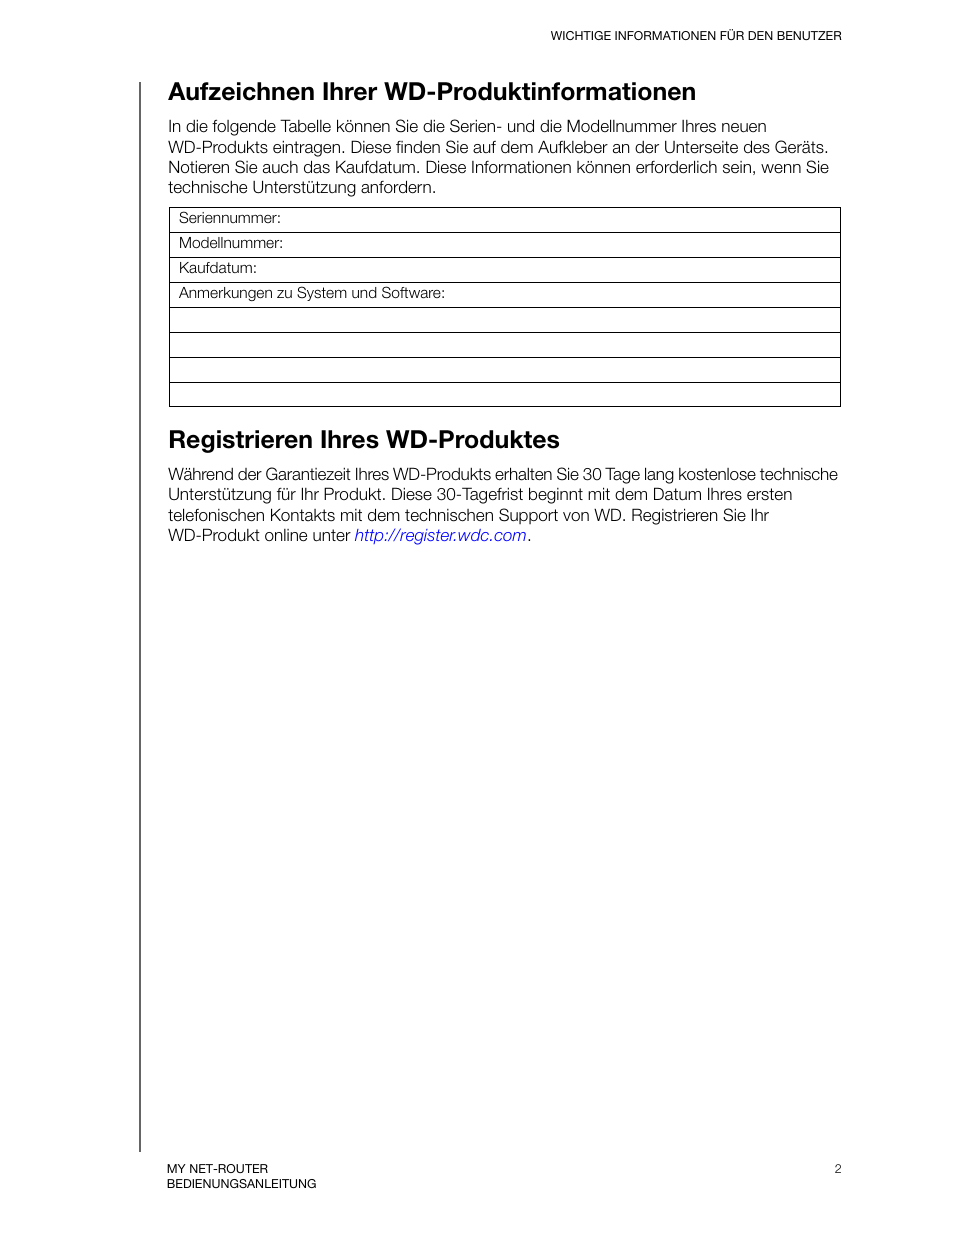 Aufzeichnen ihrer wd-produktinformationen, Registrieren ihres wd-produktes | Western Digital My Net N750 User Manual Benutzerhandbuch | Seite 6 / 96